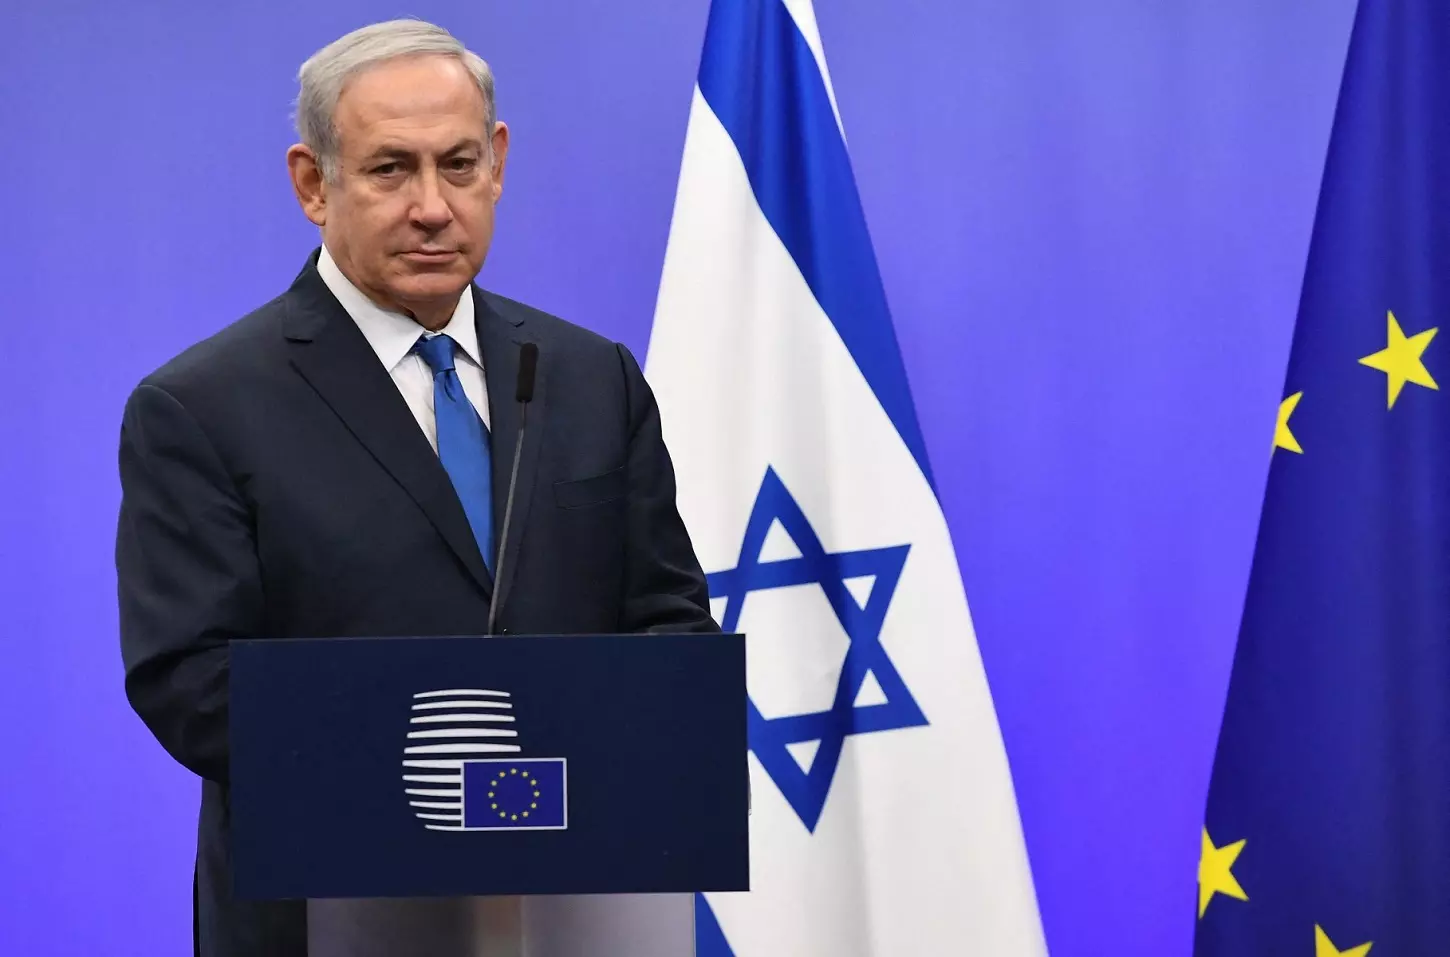 Fotografía de diciembre de 2017 de Benjamin Netanyahu, entonces también primer ministro de Israel, en una visita a las instituciones de la UE en Bruselas. — EMMANUEL DUNAND / AFP